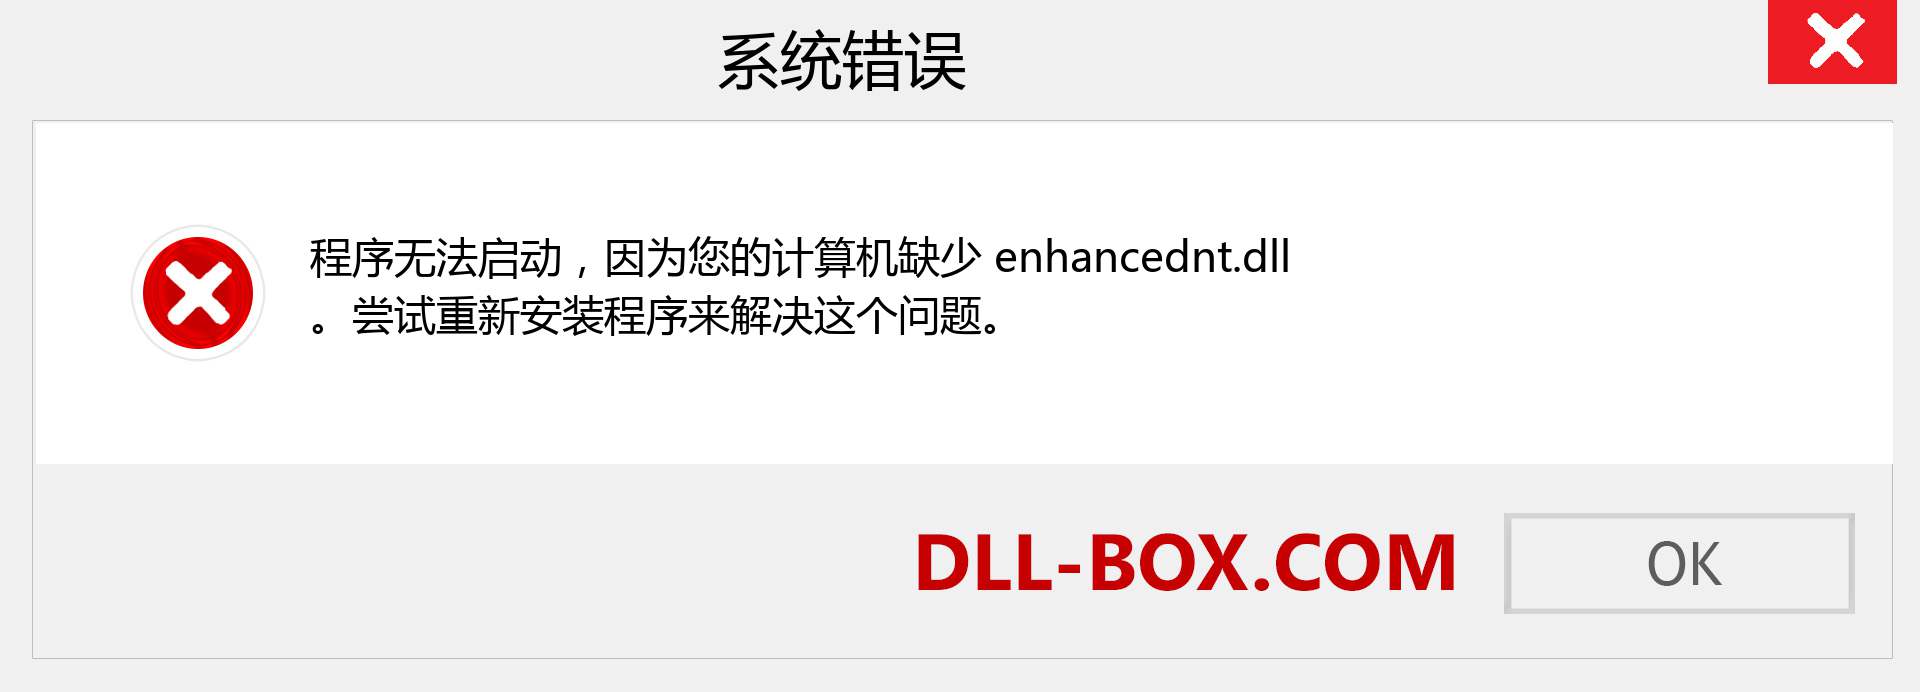 enhancednt.dll 文件丢失？。 适用于 Windows 7、8、10 的下载 - 修复 Windows、照片、图像上的 enhancednt dll 丢失错误